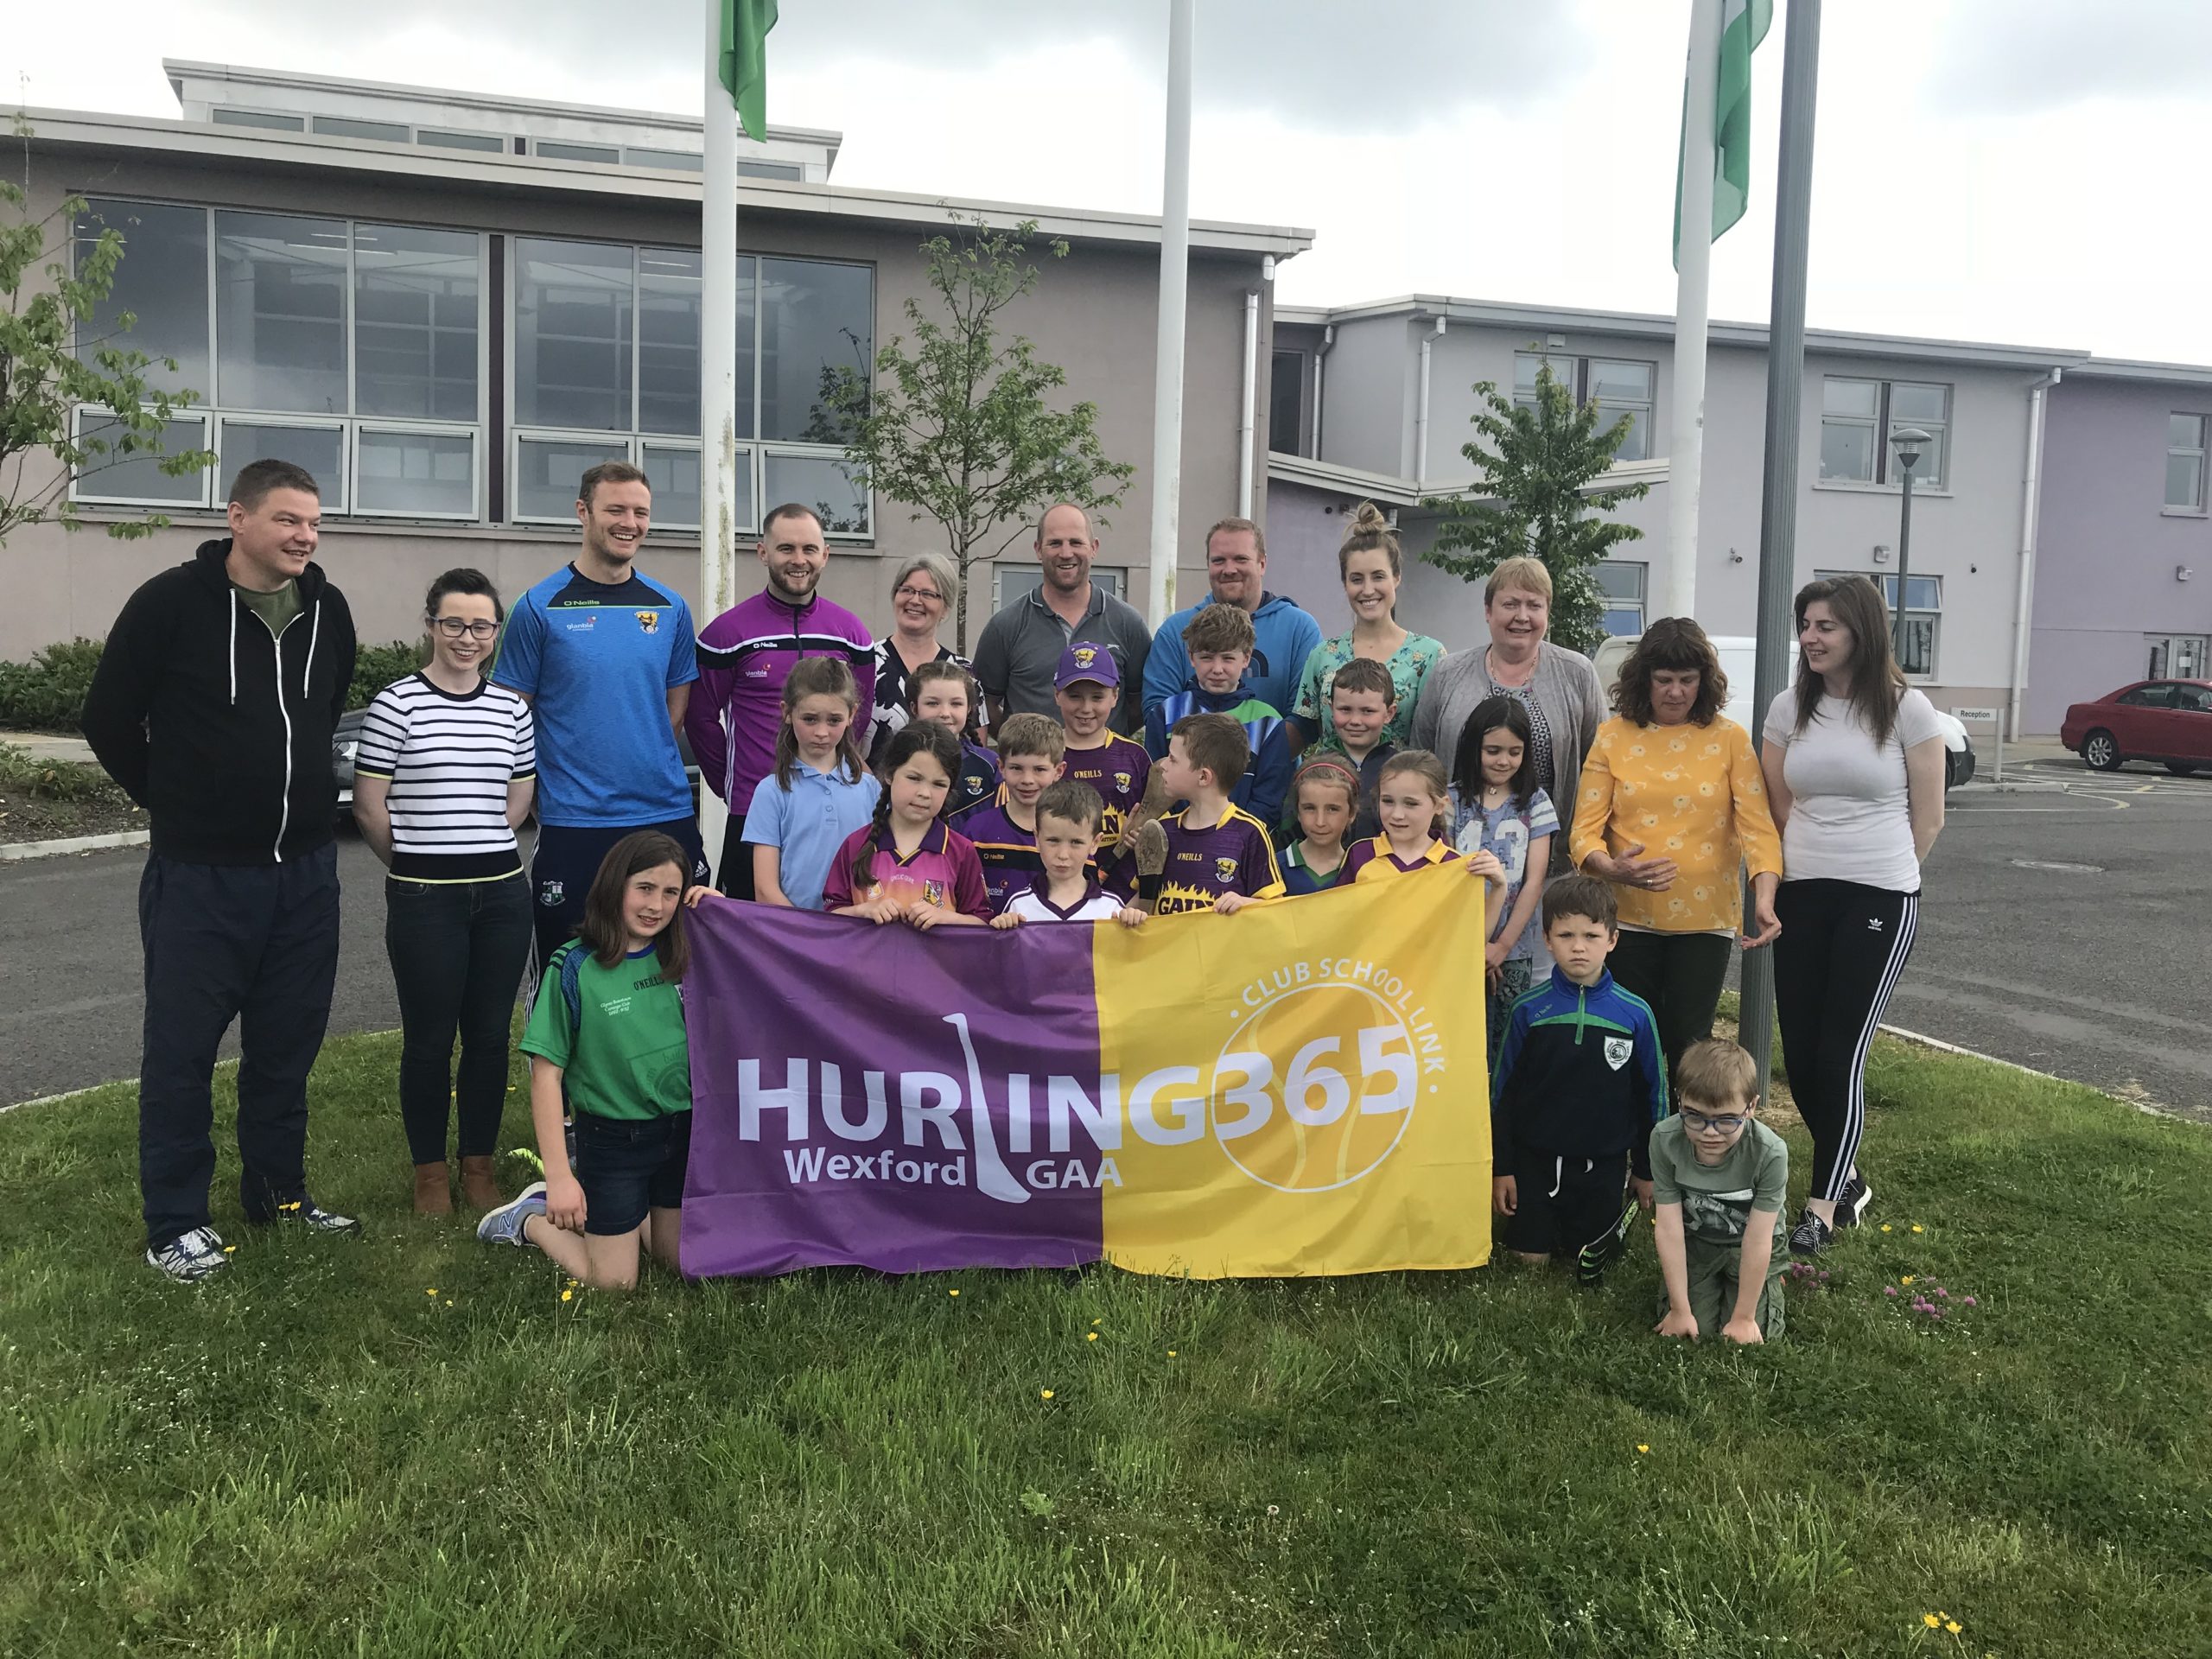 Hurling 365 / Club-School Link Set to Soar in 2018/2019